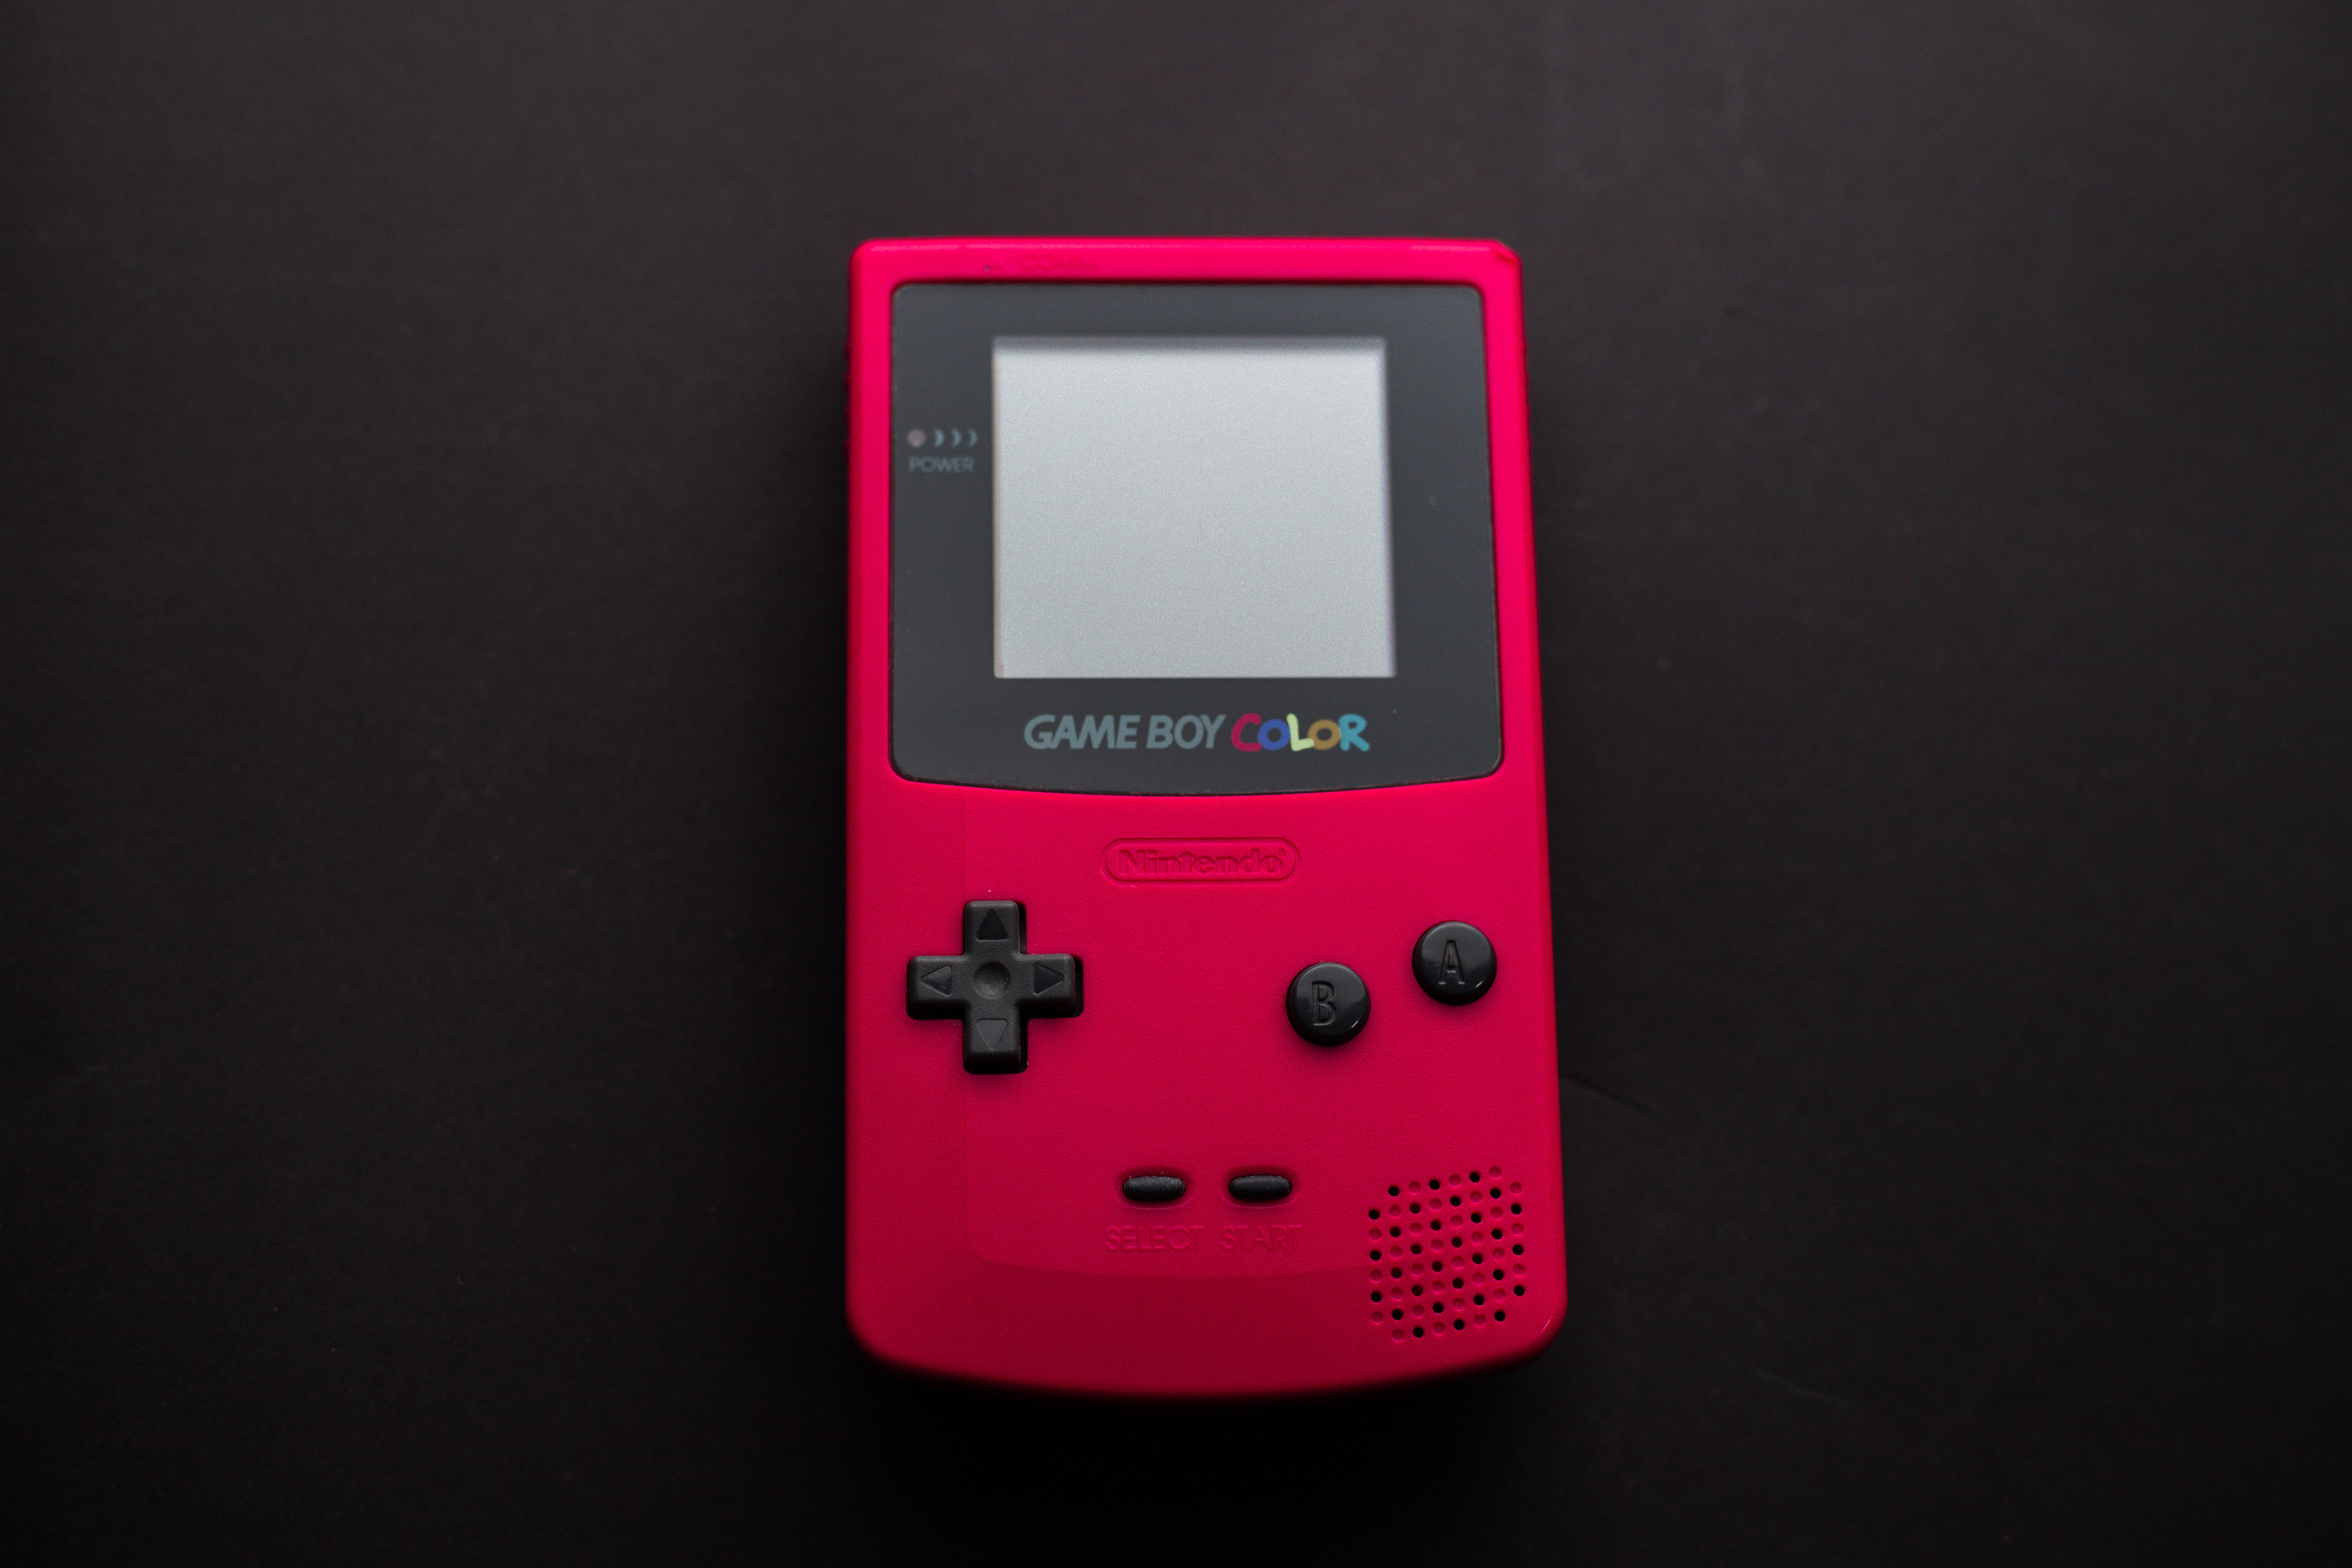 Nintendo Game Boy Color. Photo: Pexels/Luis Quintero